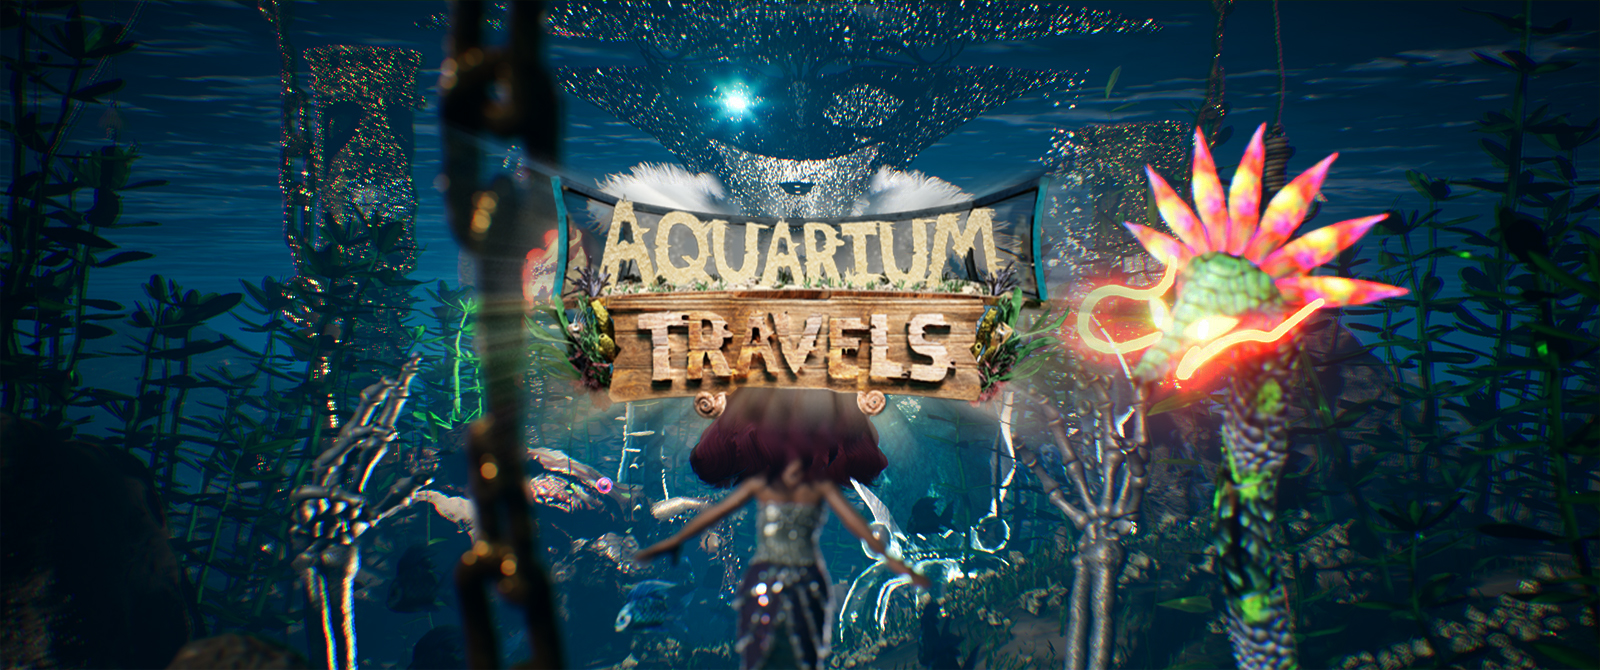 Aquarium Travels